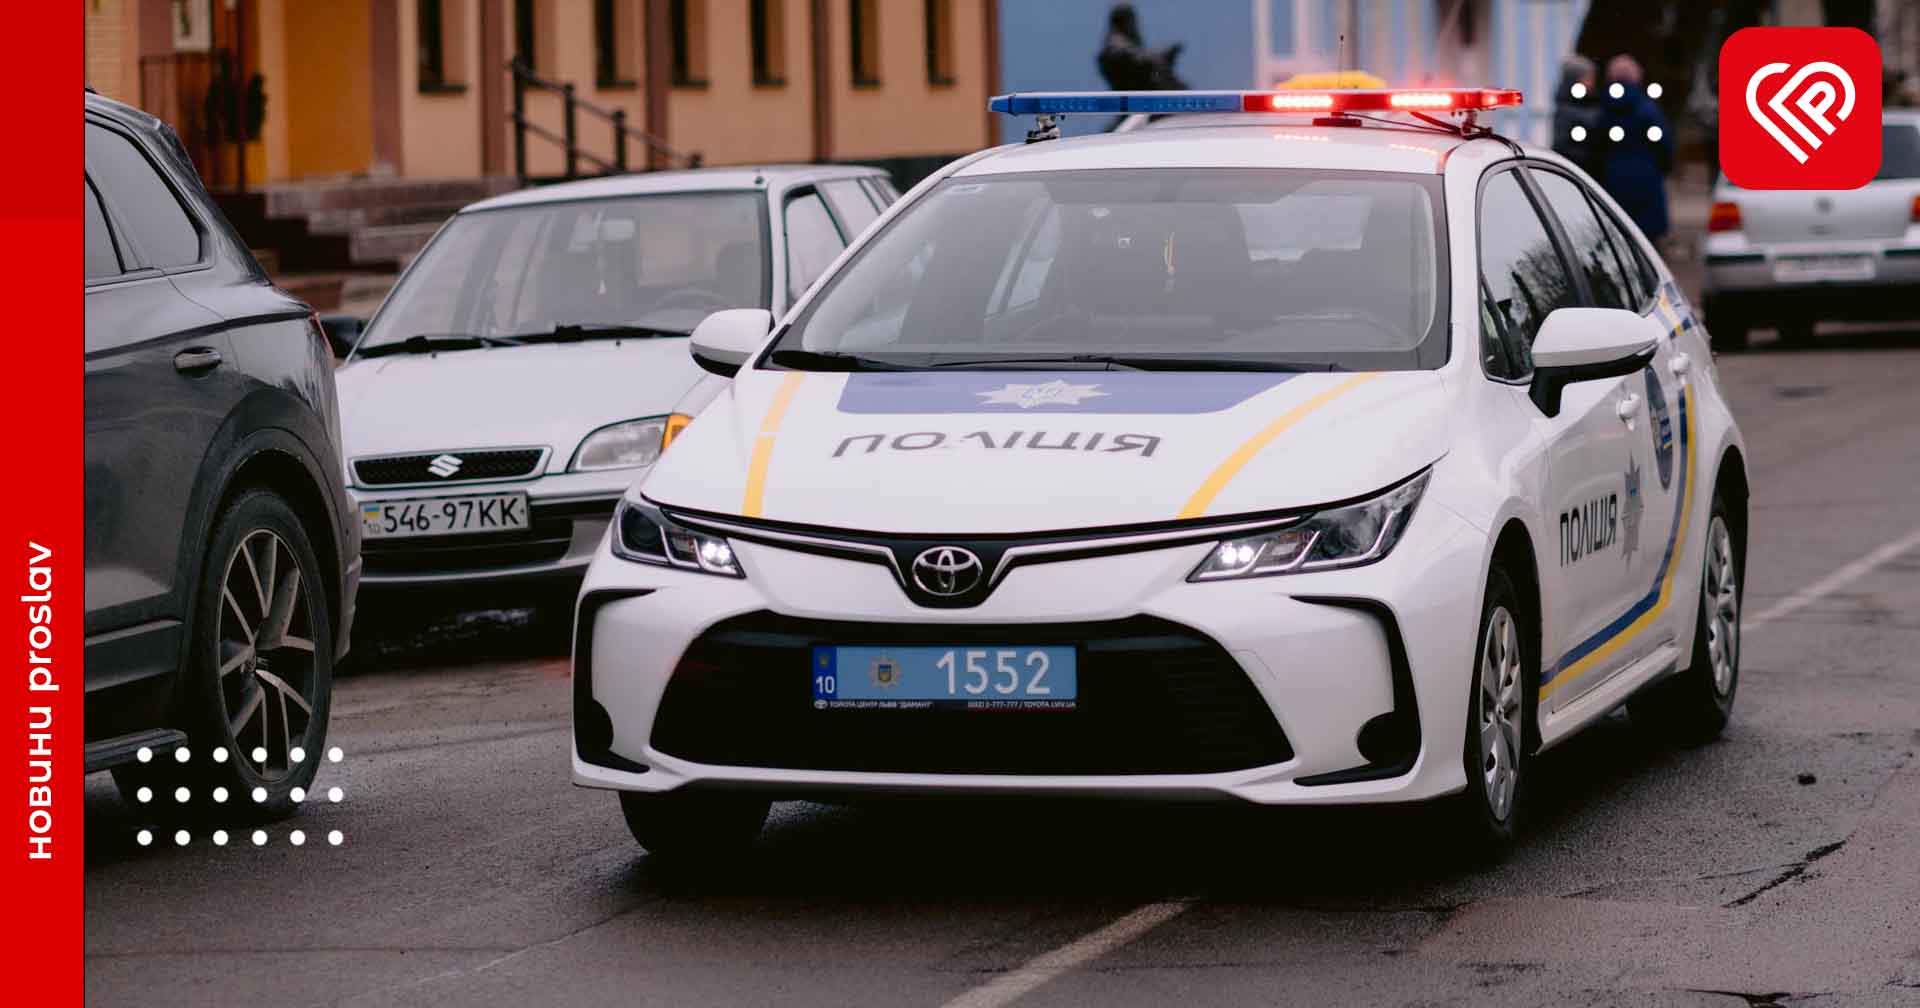 У Переяславі знайшли автомобіль, який розшукувався виконавчою службою – дайджест поліції